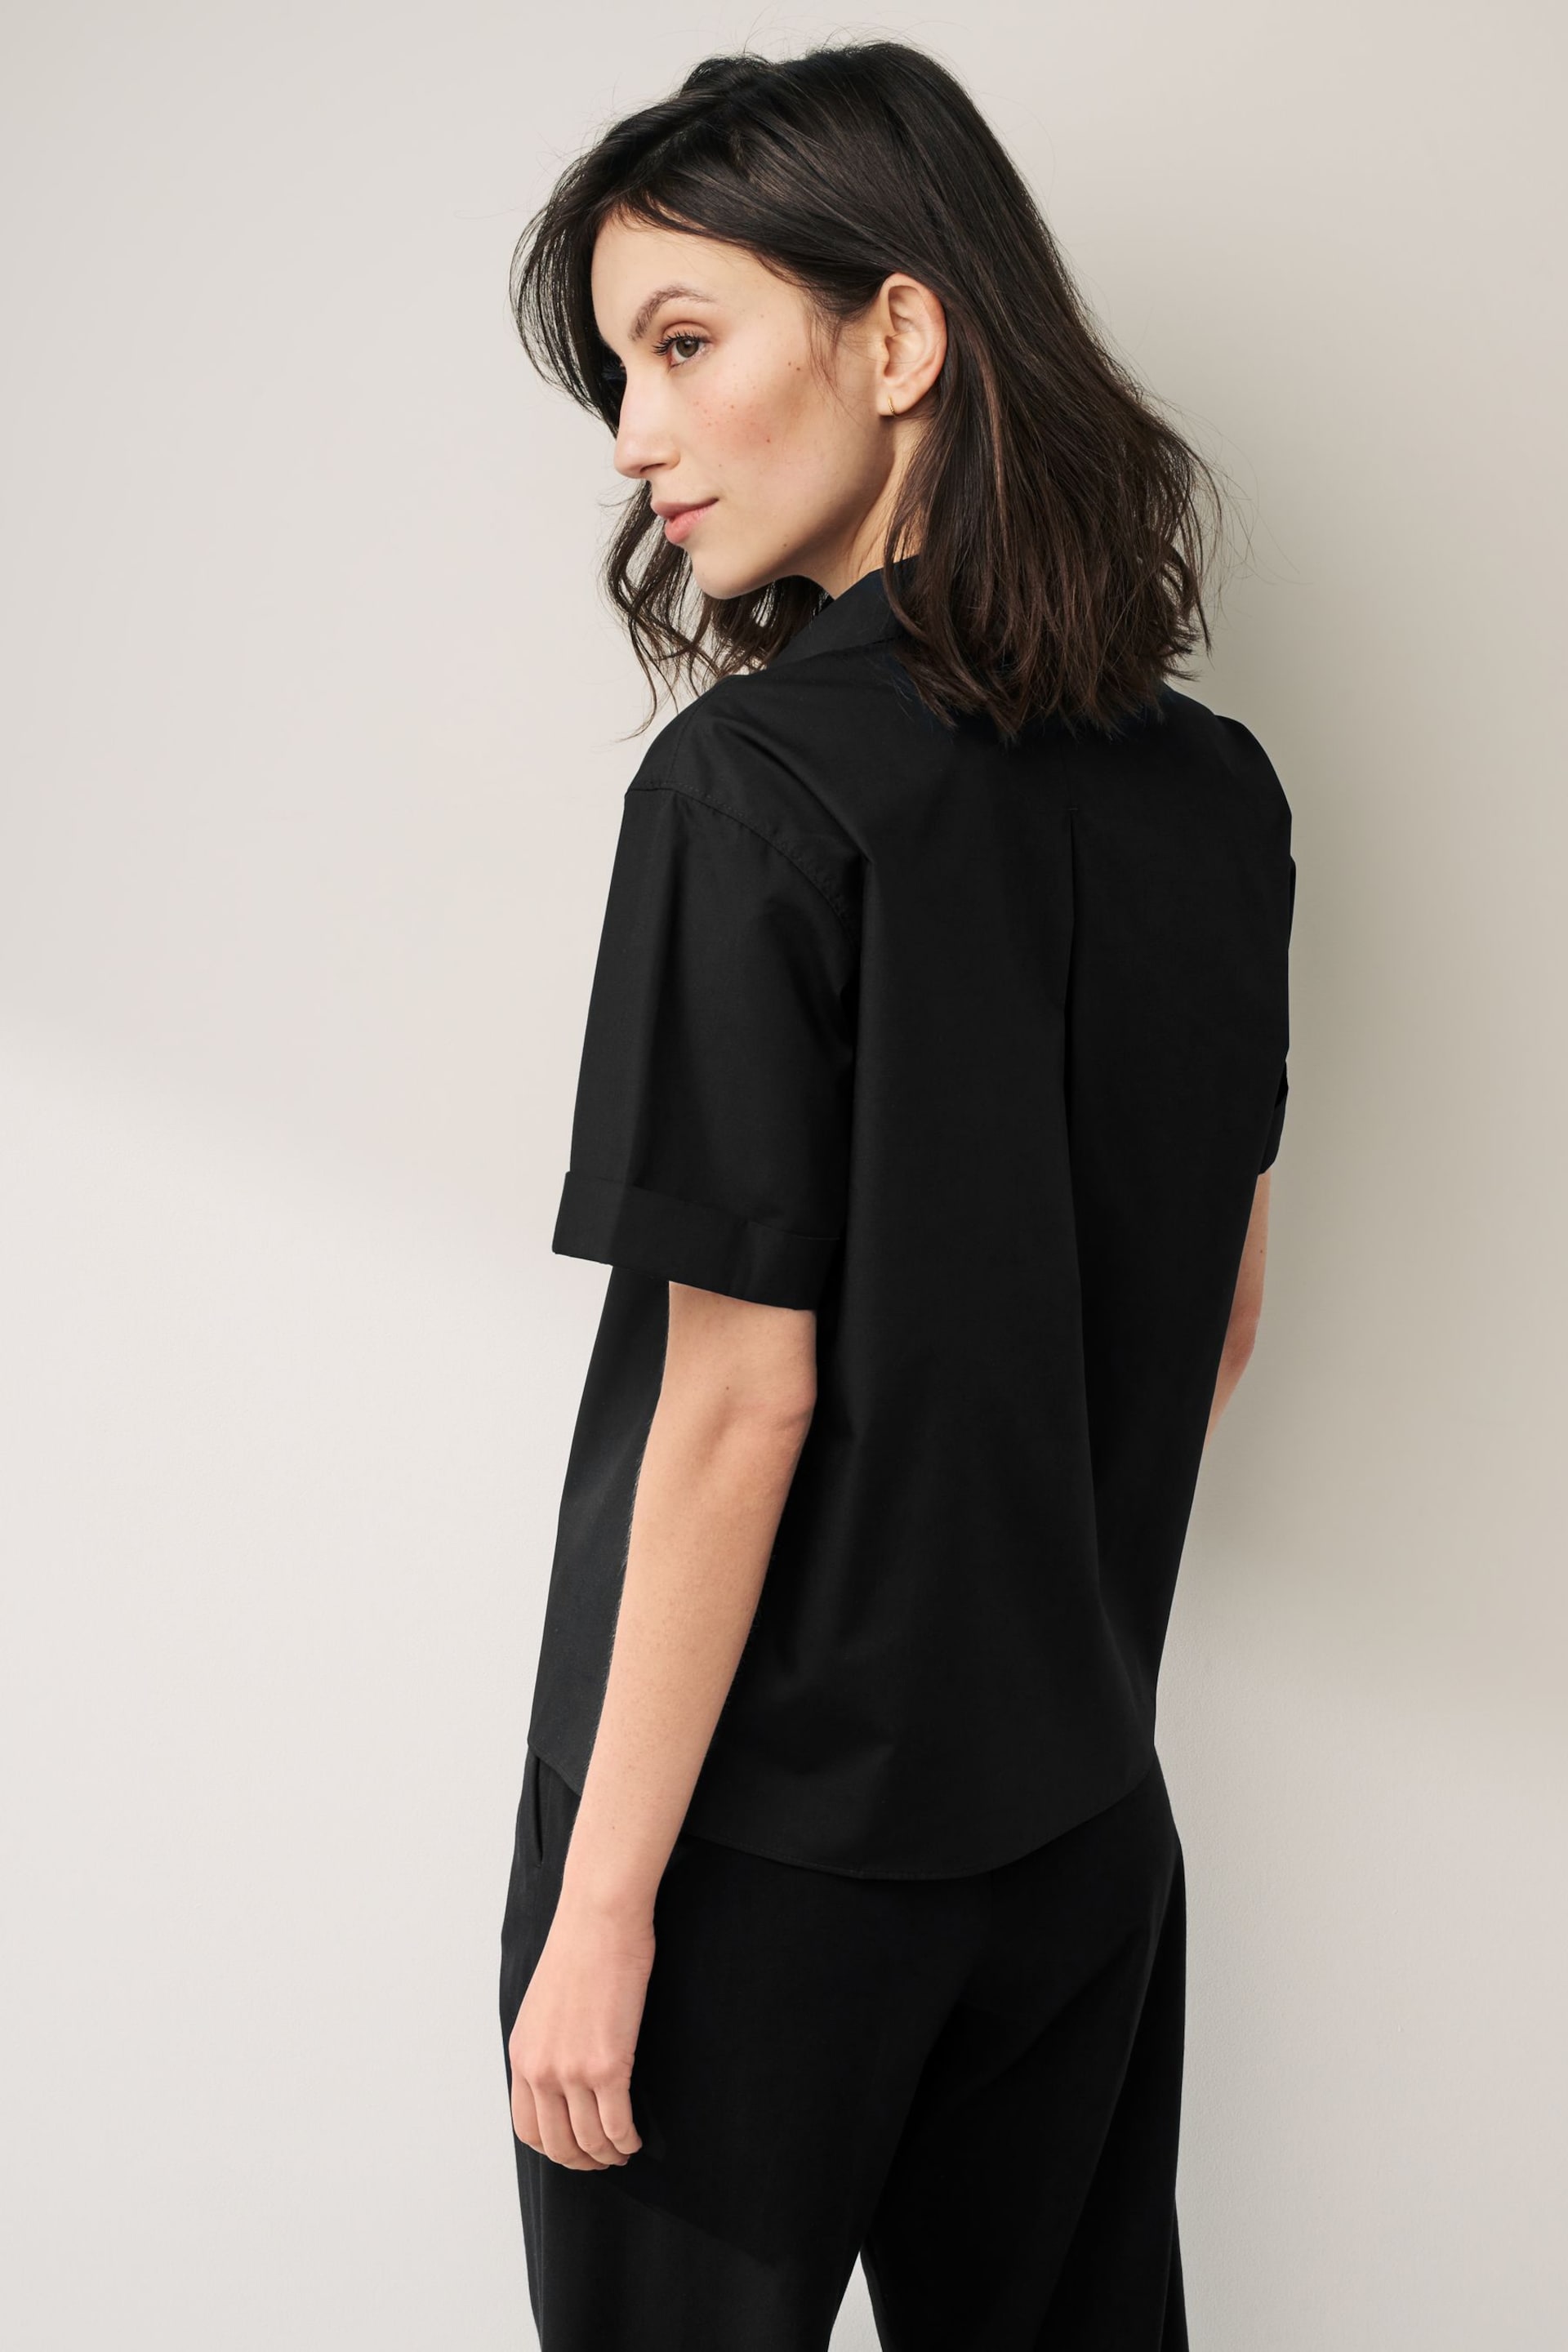 Black Short Sleeve Shirts 2 Pack - Image 3 of 6